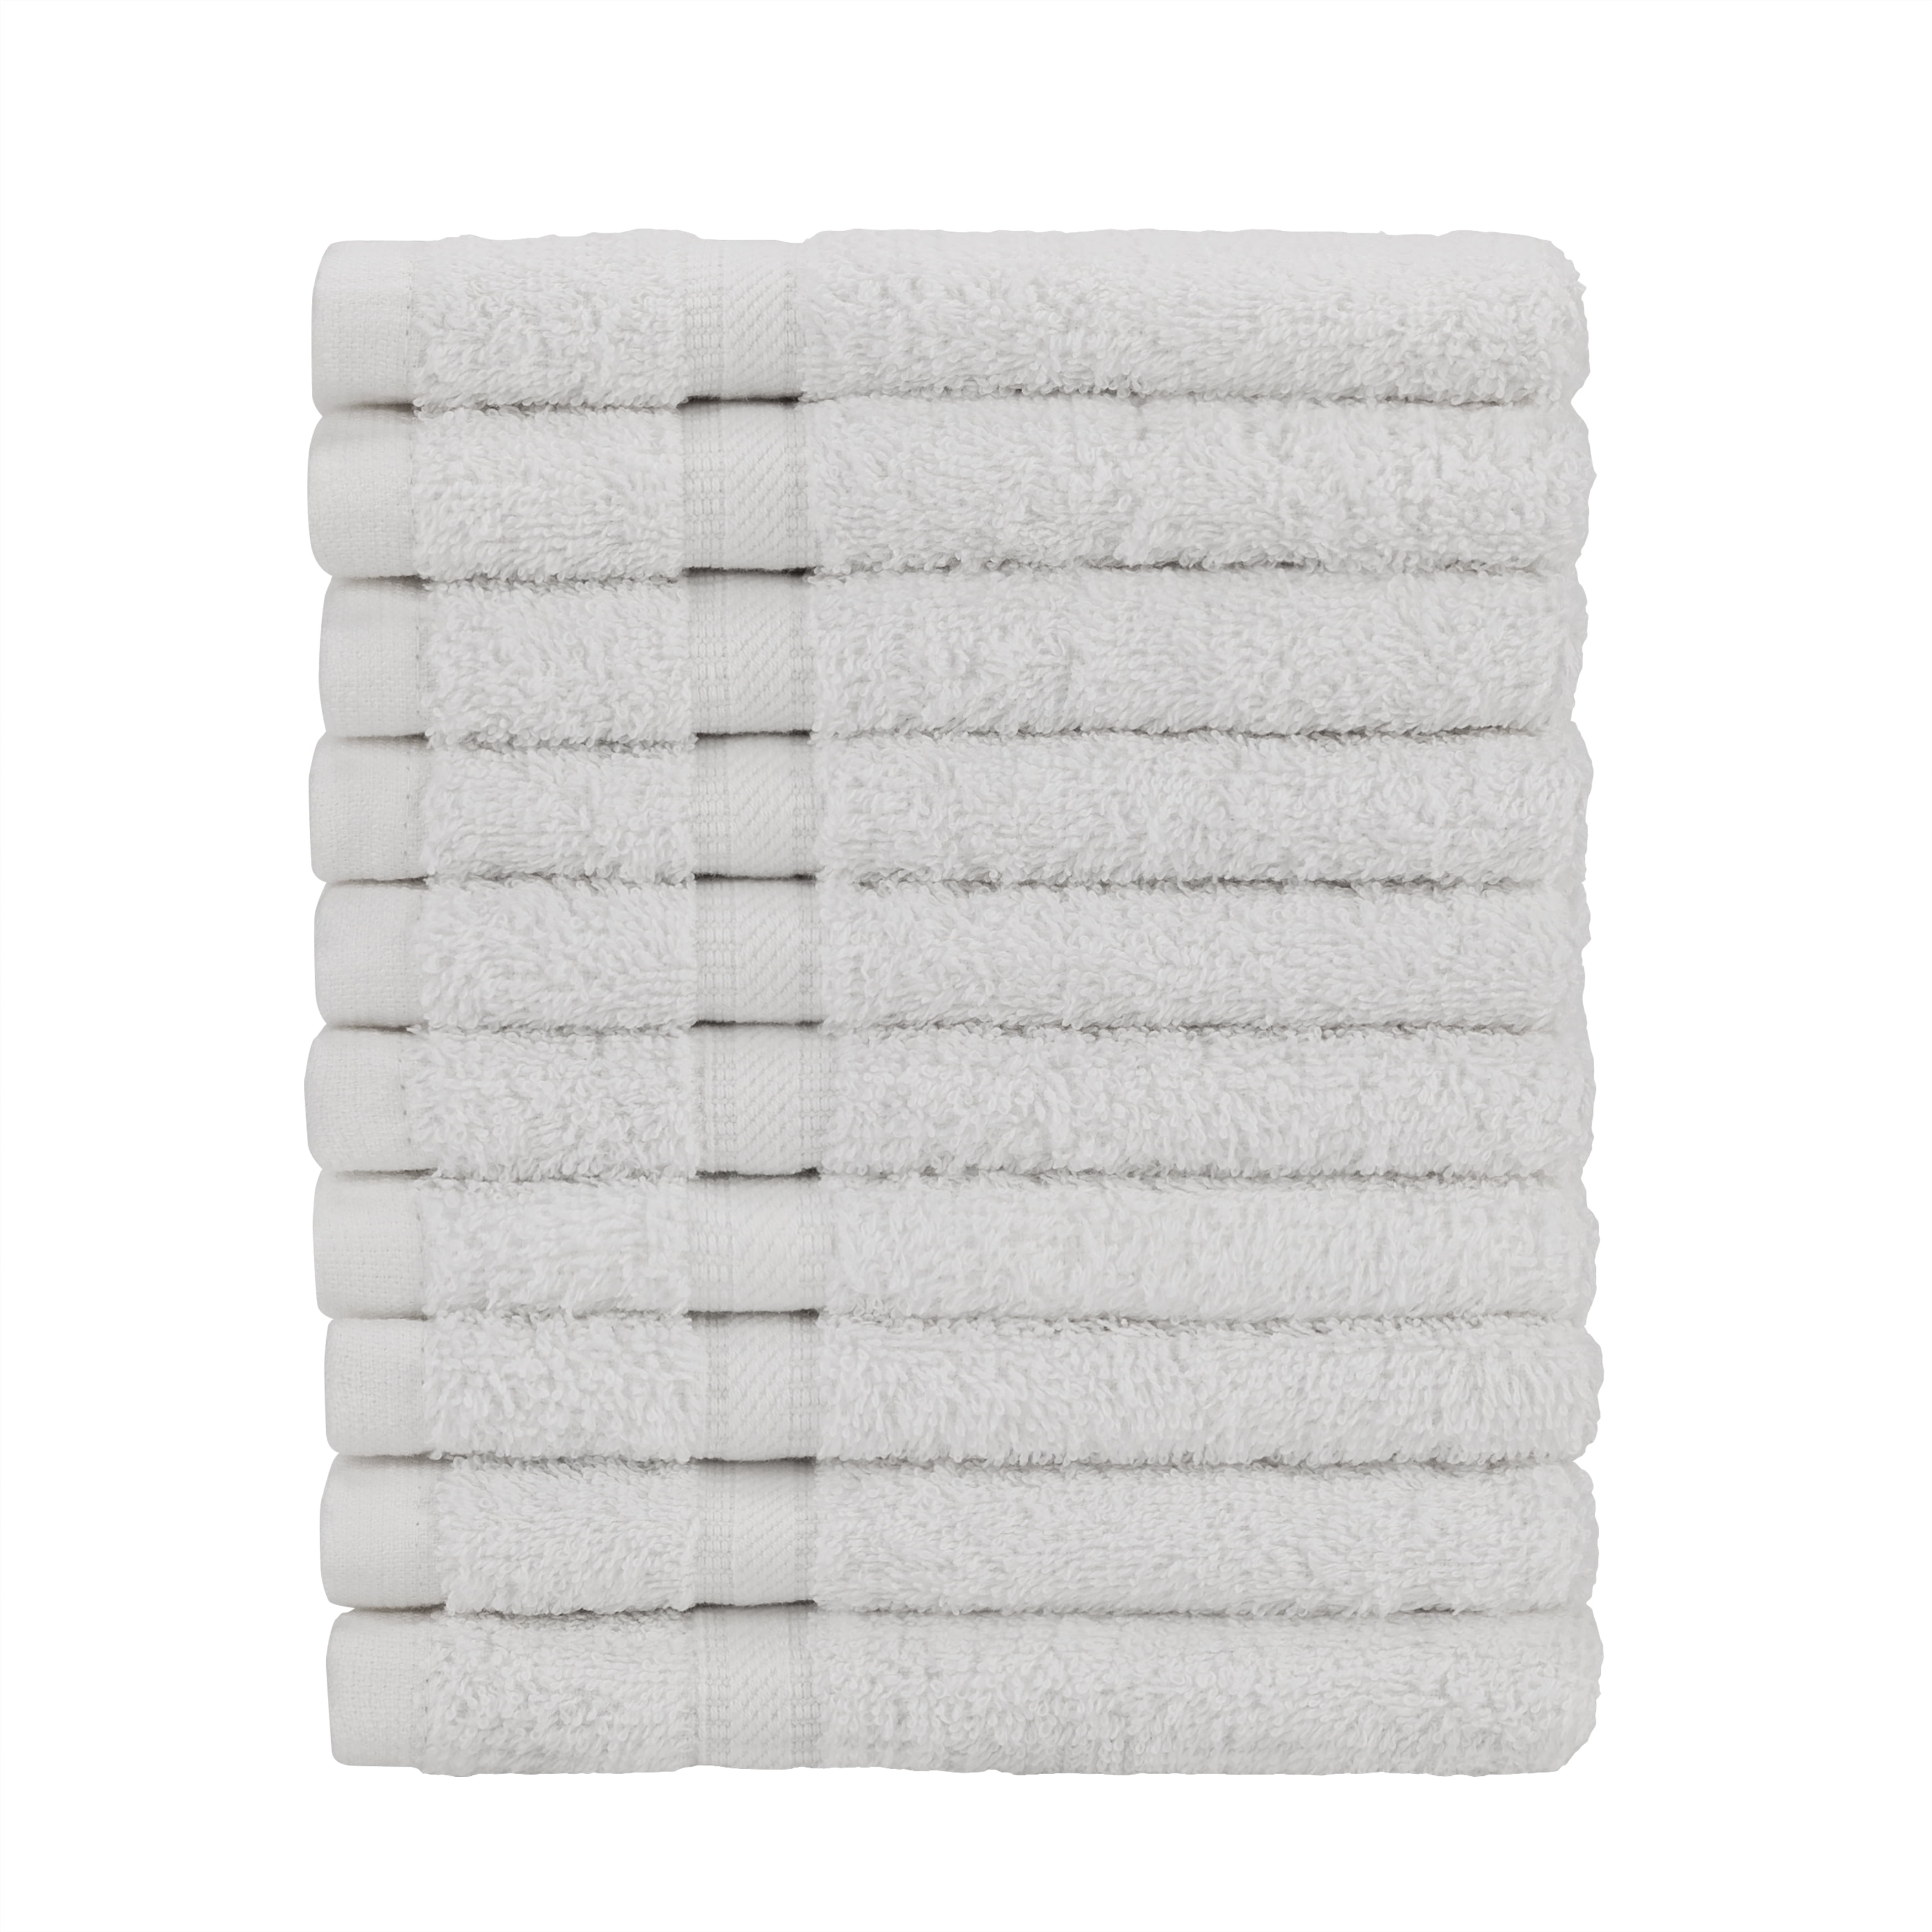 2Pcs Bath Towels Soft Ployester Hotel Resort Home Bathroom Hand Towels Q 